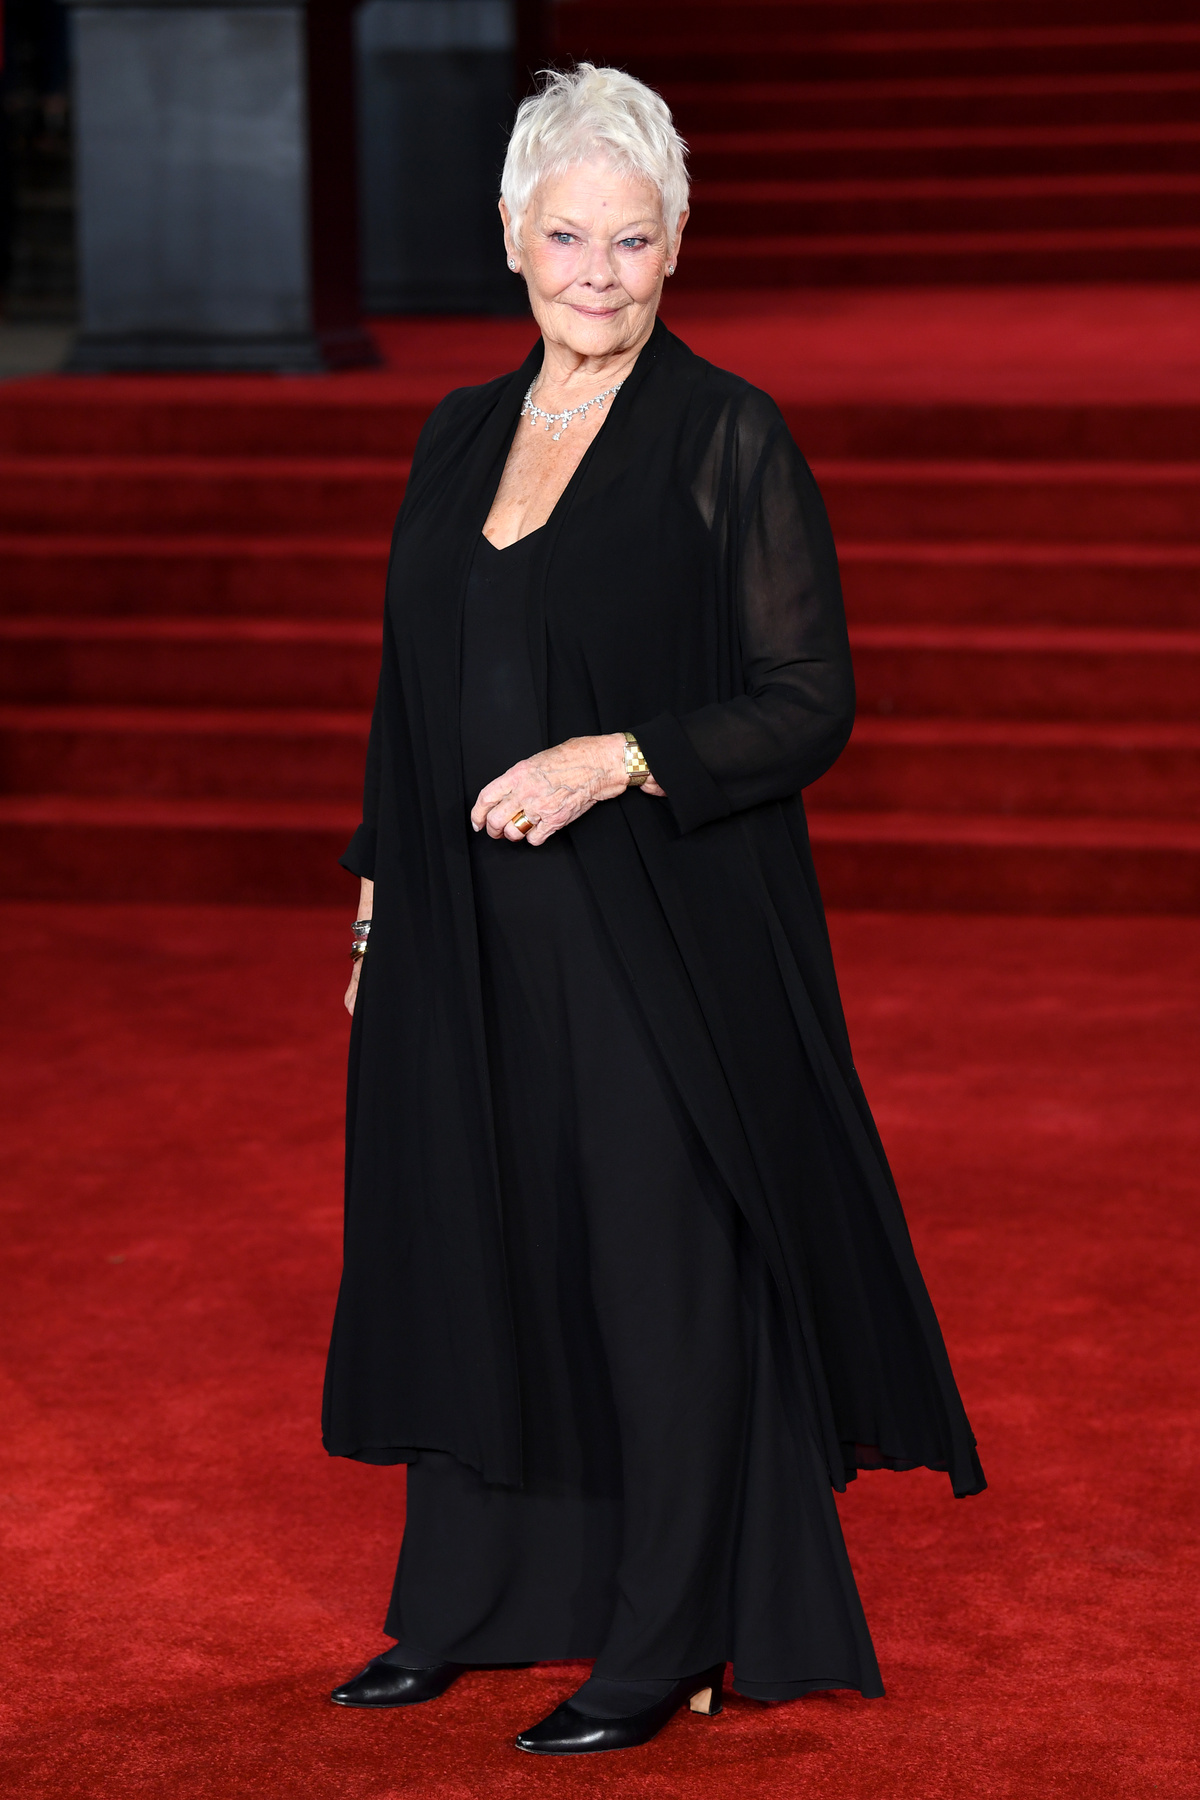 És utoljára Cheryl Hines színésznőt mutatjuk, aki egy klasszikus fazont mutat a lehető legunalmasabb színben. De 2+2 továbbra is 4, és egy ilyen ruha továbbra is baromi jól tud állni egy nőnek. Például Cheryl Hinesnak.